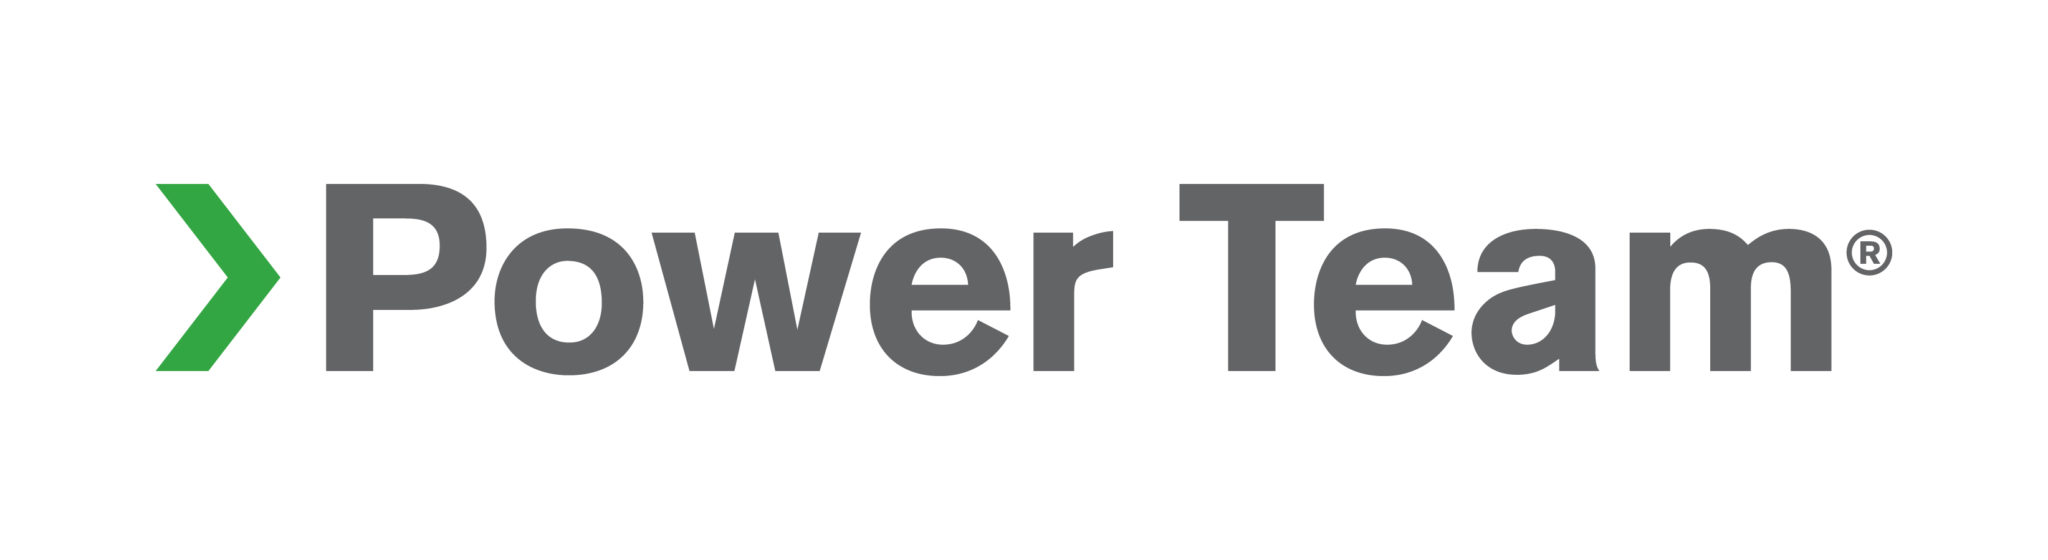 SPX-Power-Team-logo